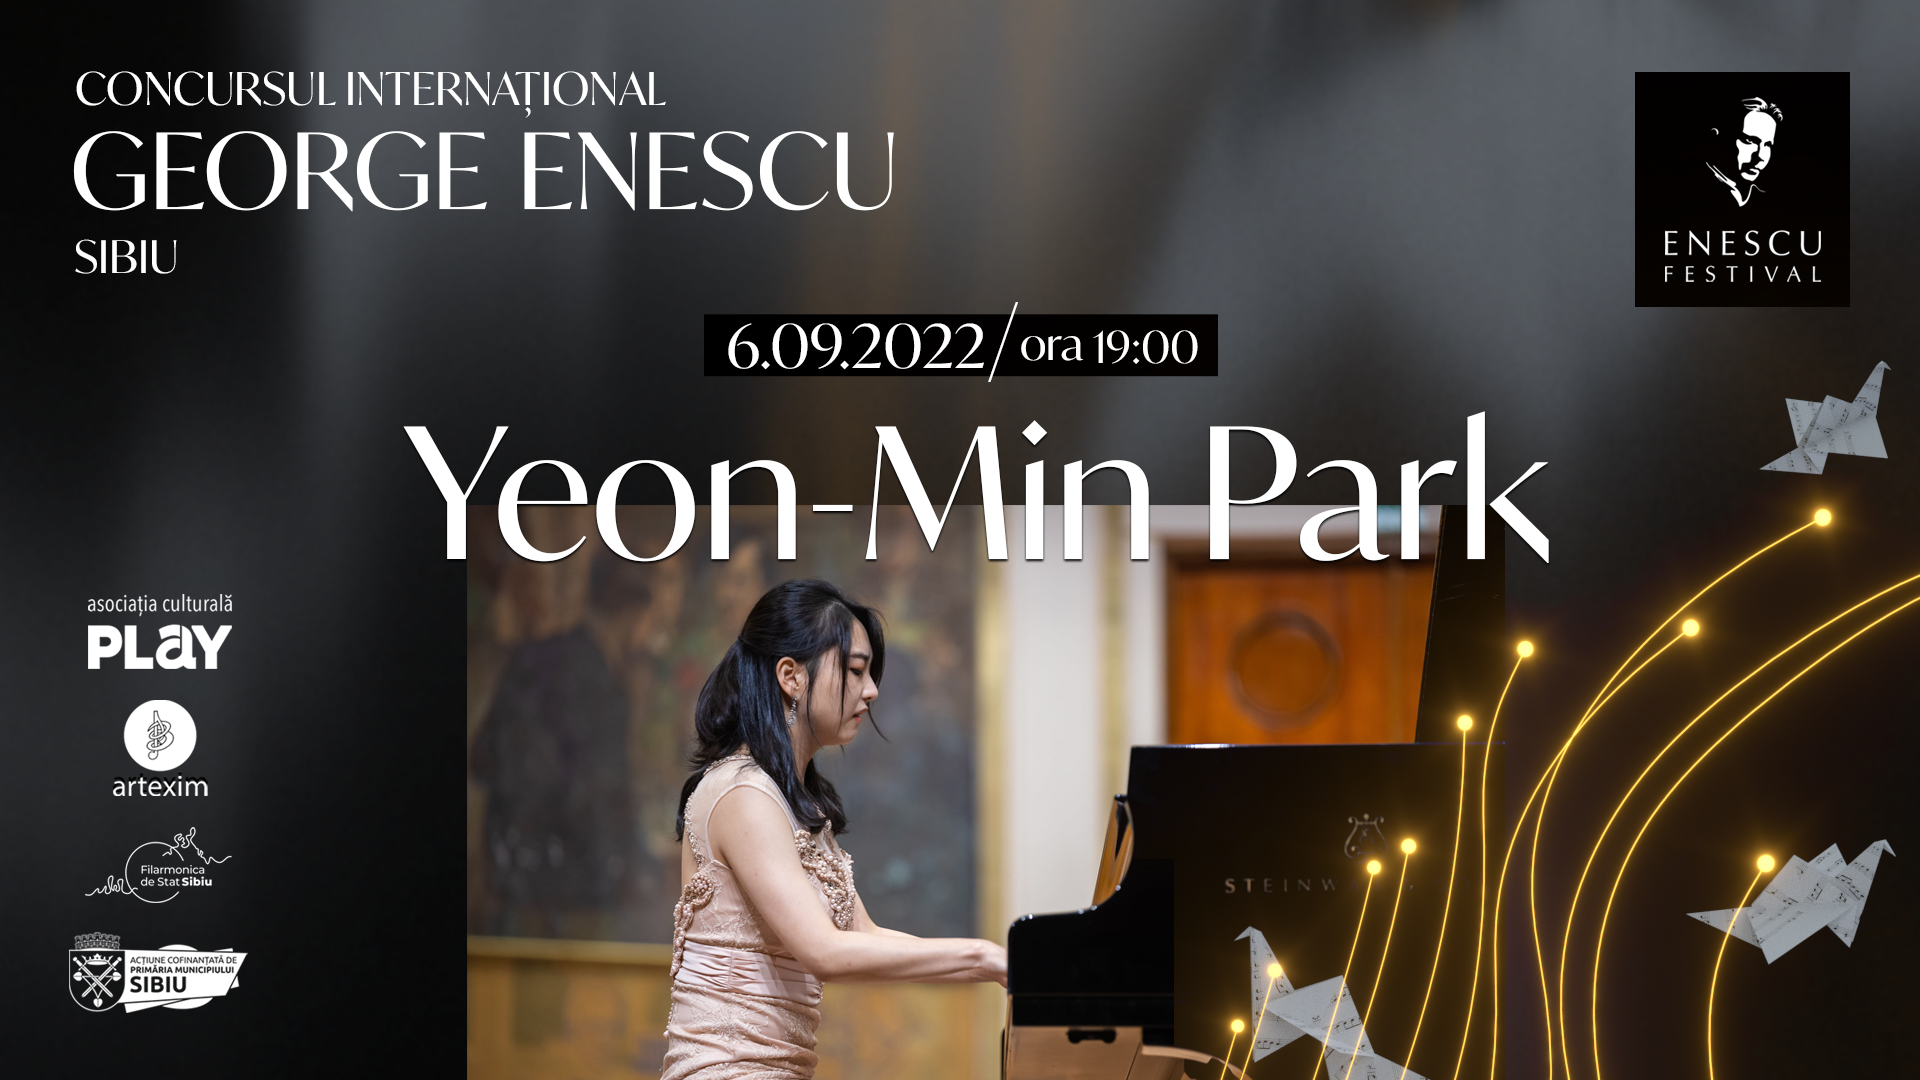 Recital Yeon-Min Park ✦ Concursul Internațional George Enescu Sibiu